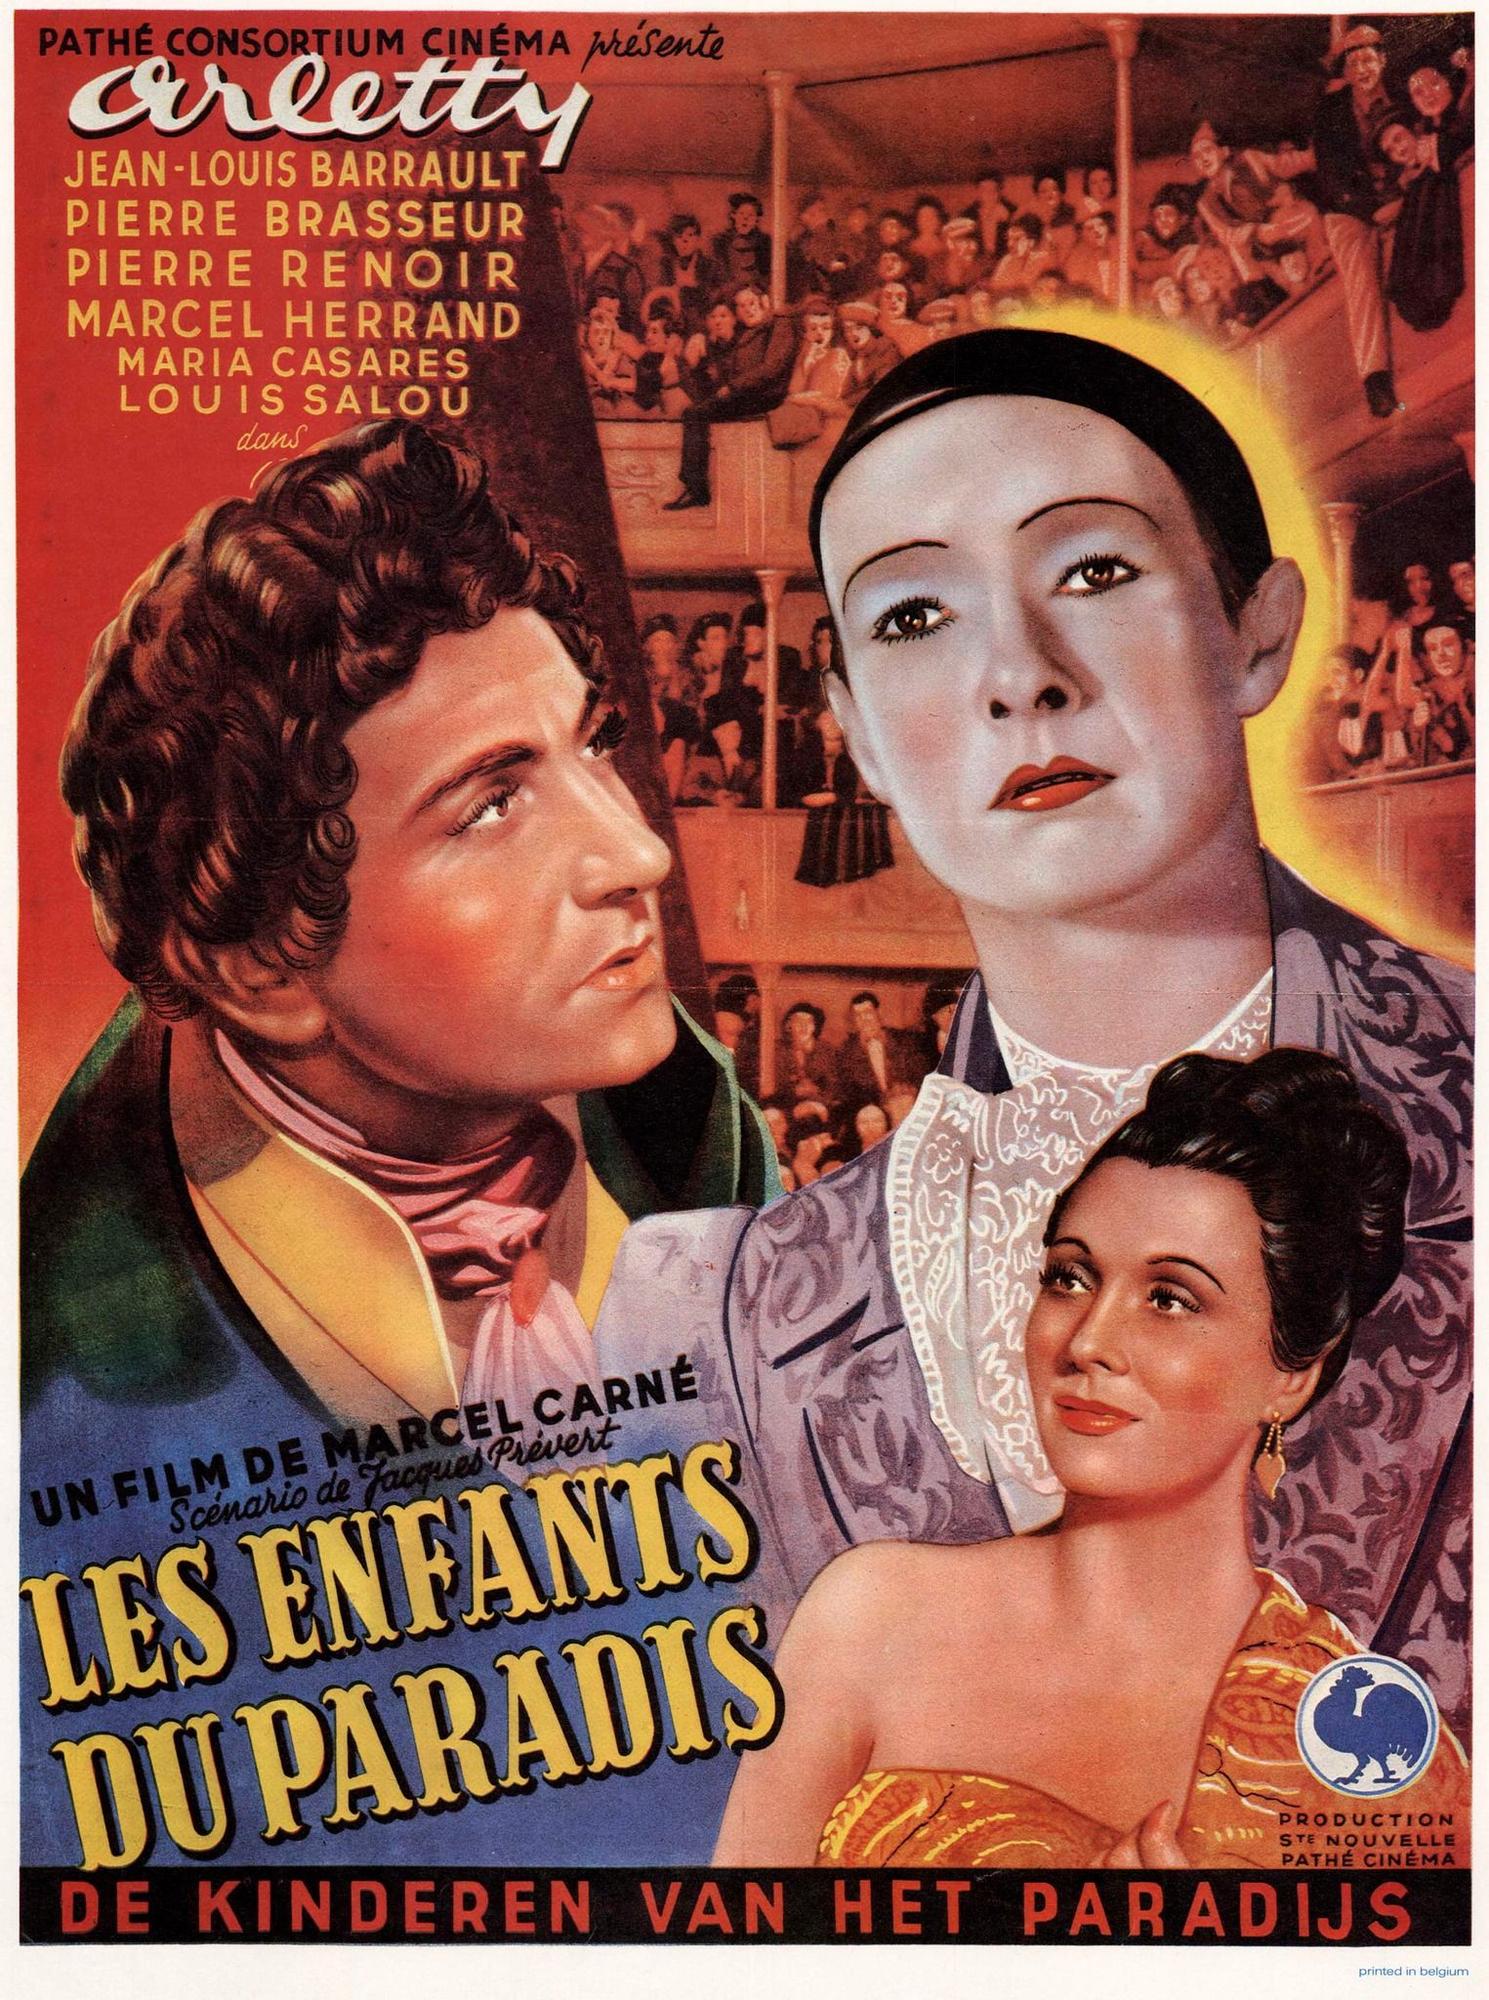 Cartel de la película "Les enfants du Paradis", 1945